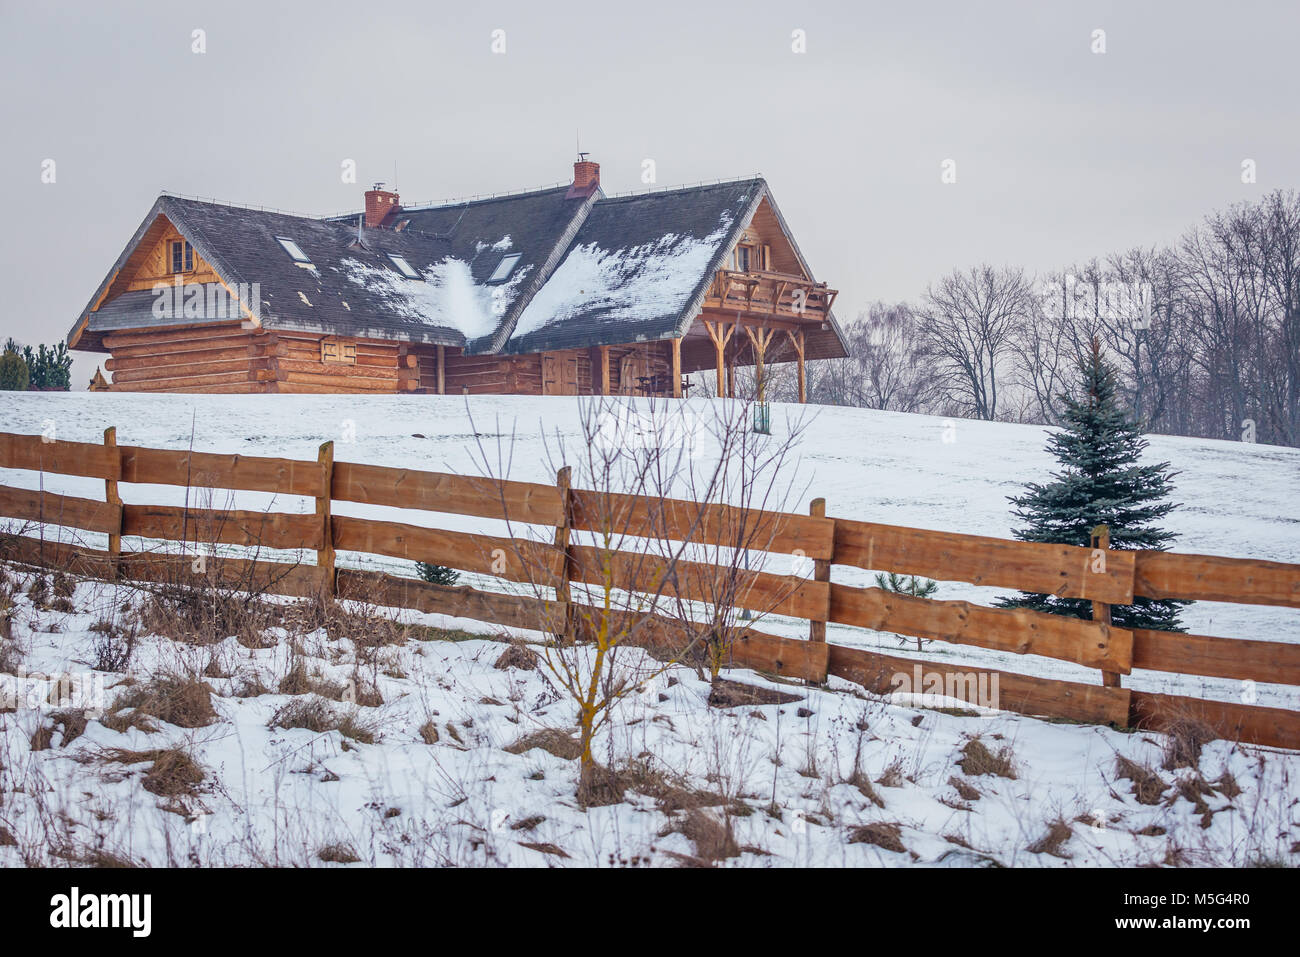 Maison en bois moderne à Kruszyniany, ancien village Tatars polonais au sein de l'établissement, comté de Sokolka Podlaskie Voivodeship de Pologne Banque D'Images